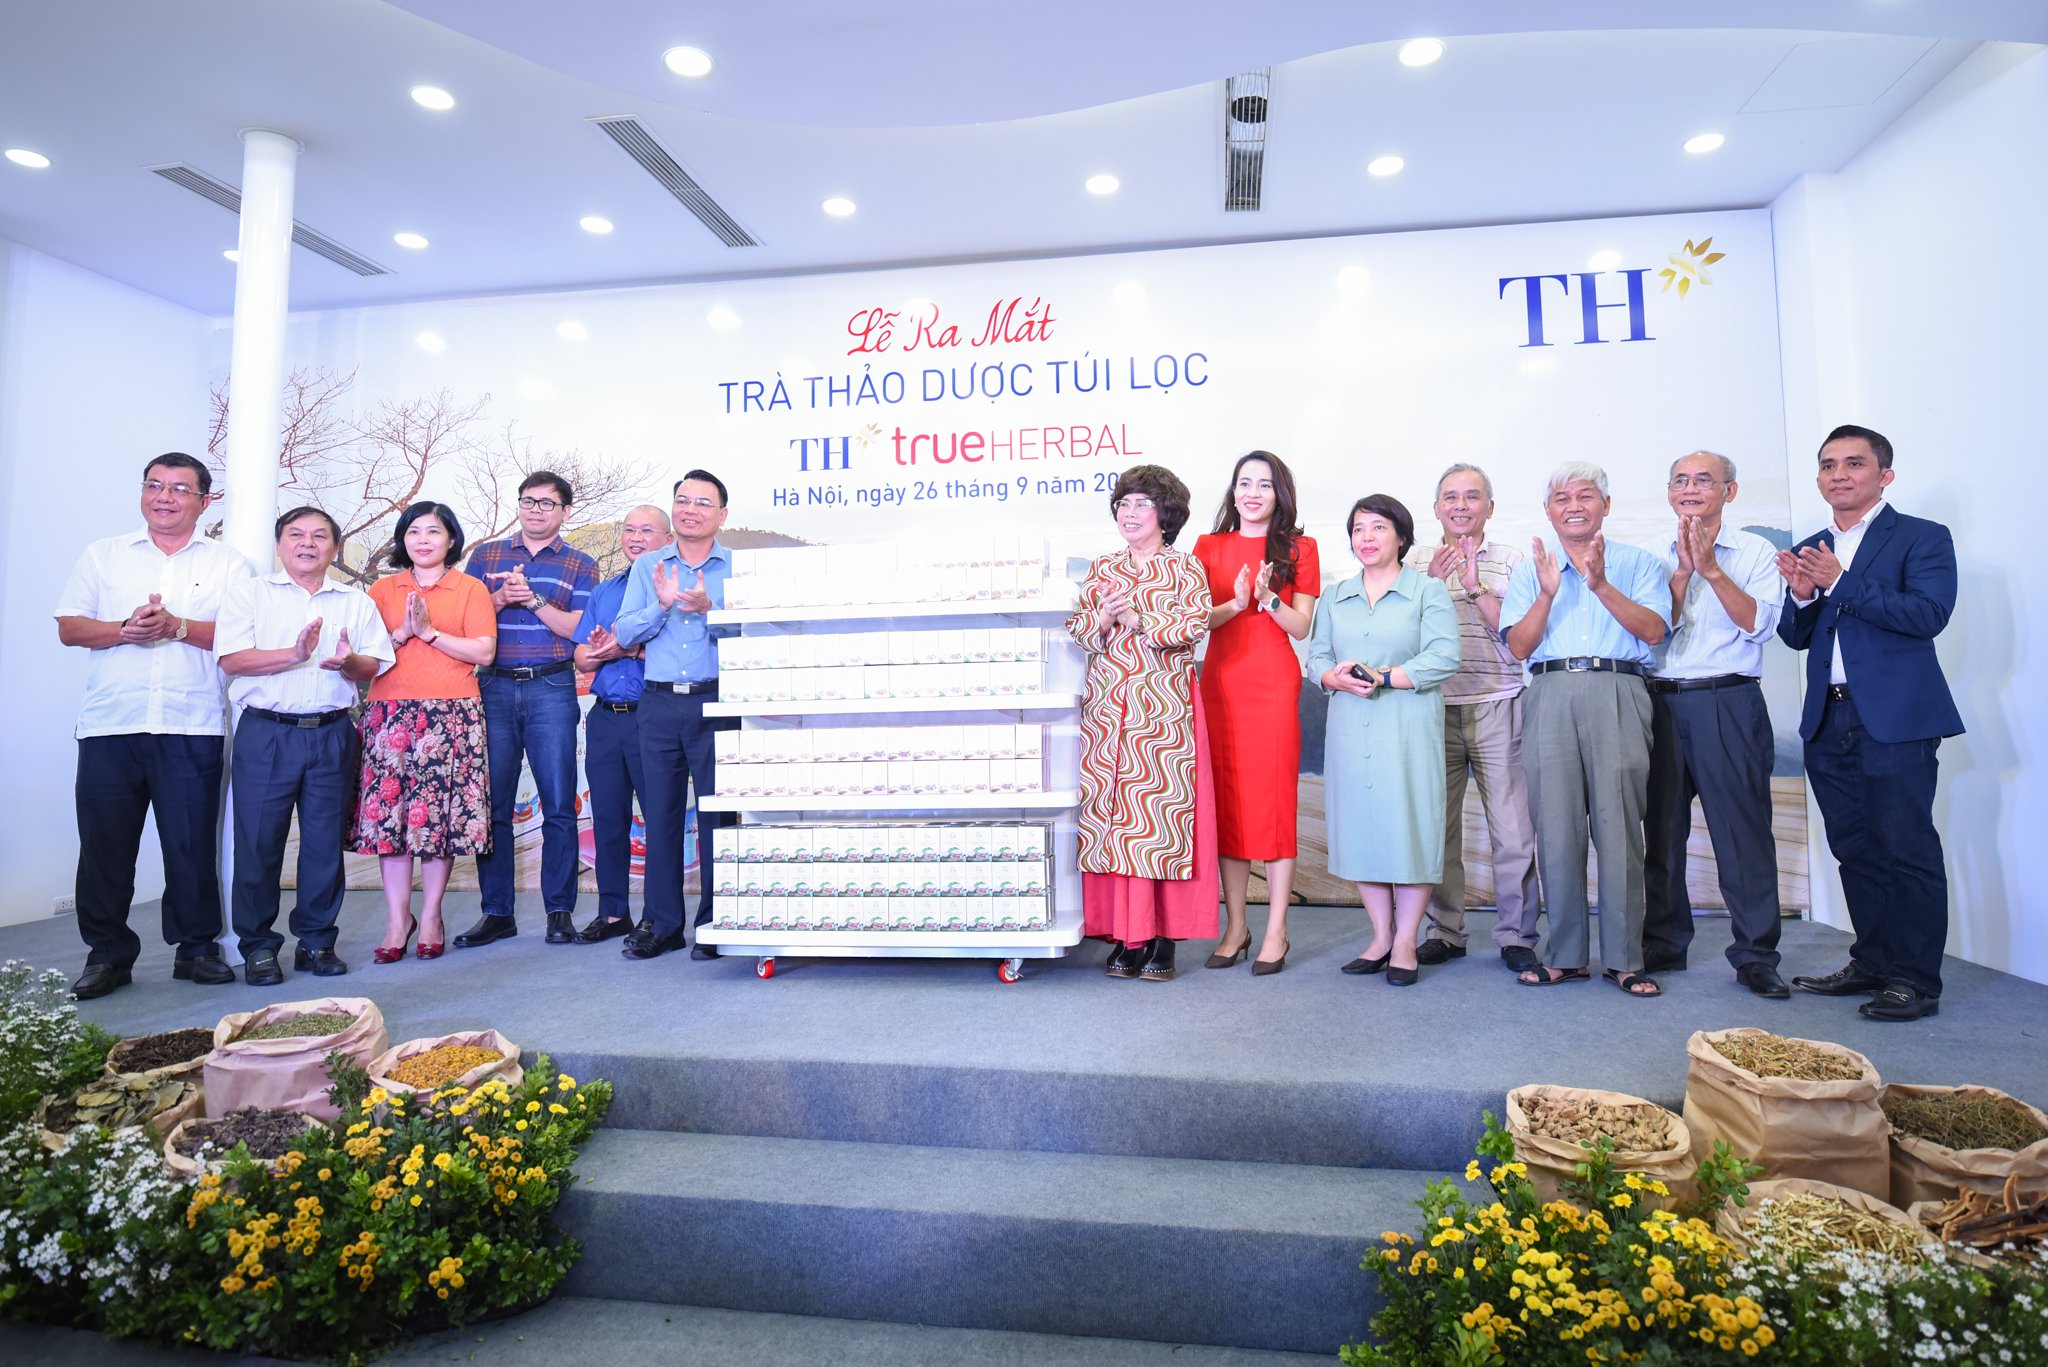 4 sản phẩm trà dược liệu TH true HERBAL mới ra mắt của Tập đoàn TH được đánh giá là những cặp đôi tinh hoa và hoàn hảo cho sức khỏe. Ảnh: Tùng Đinh.